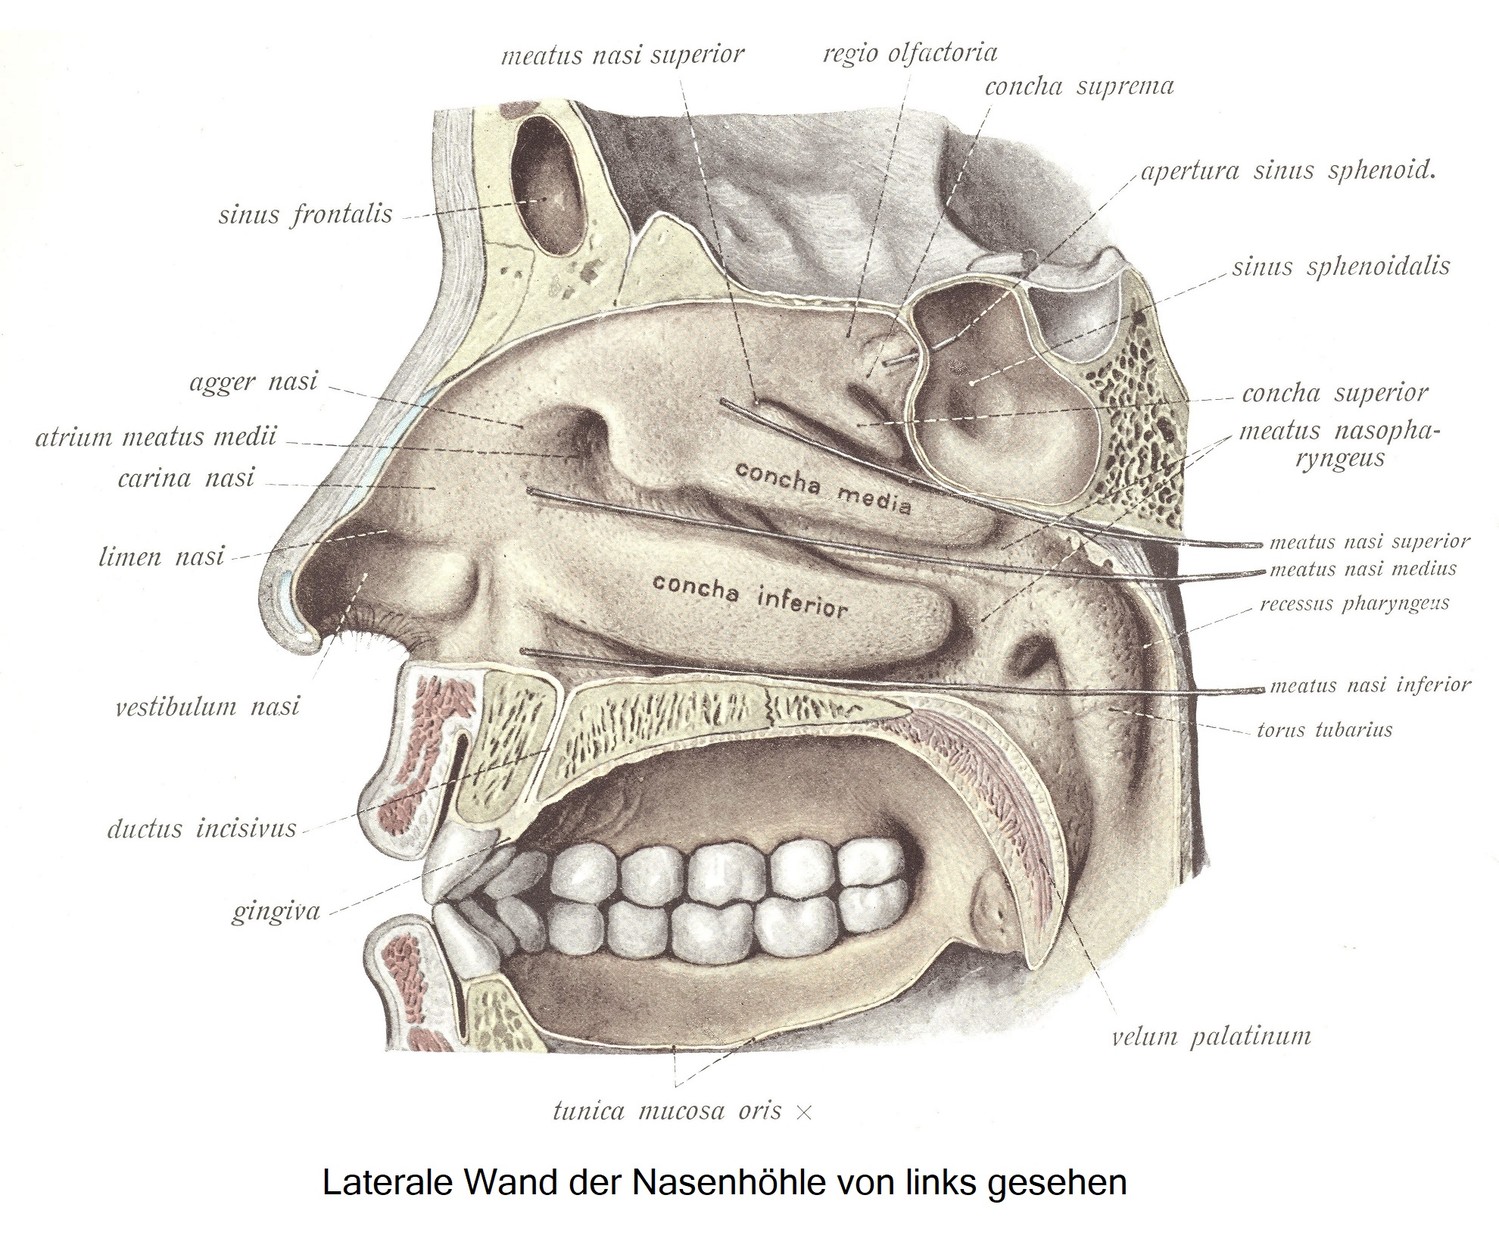 Die Nebenhöhlen der Nase, sinus paranasales